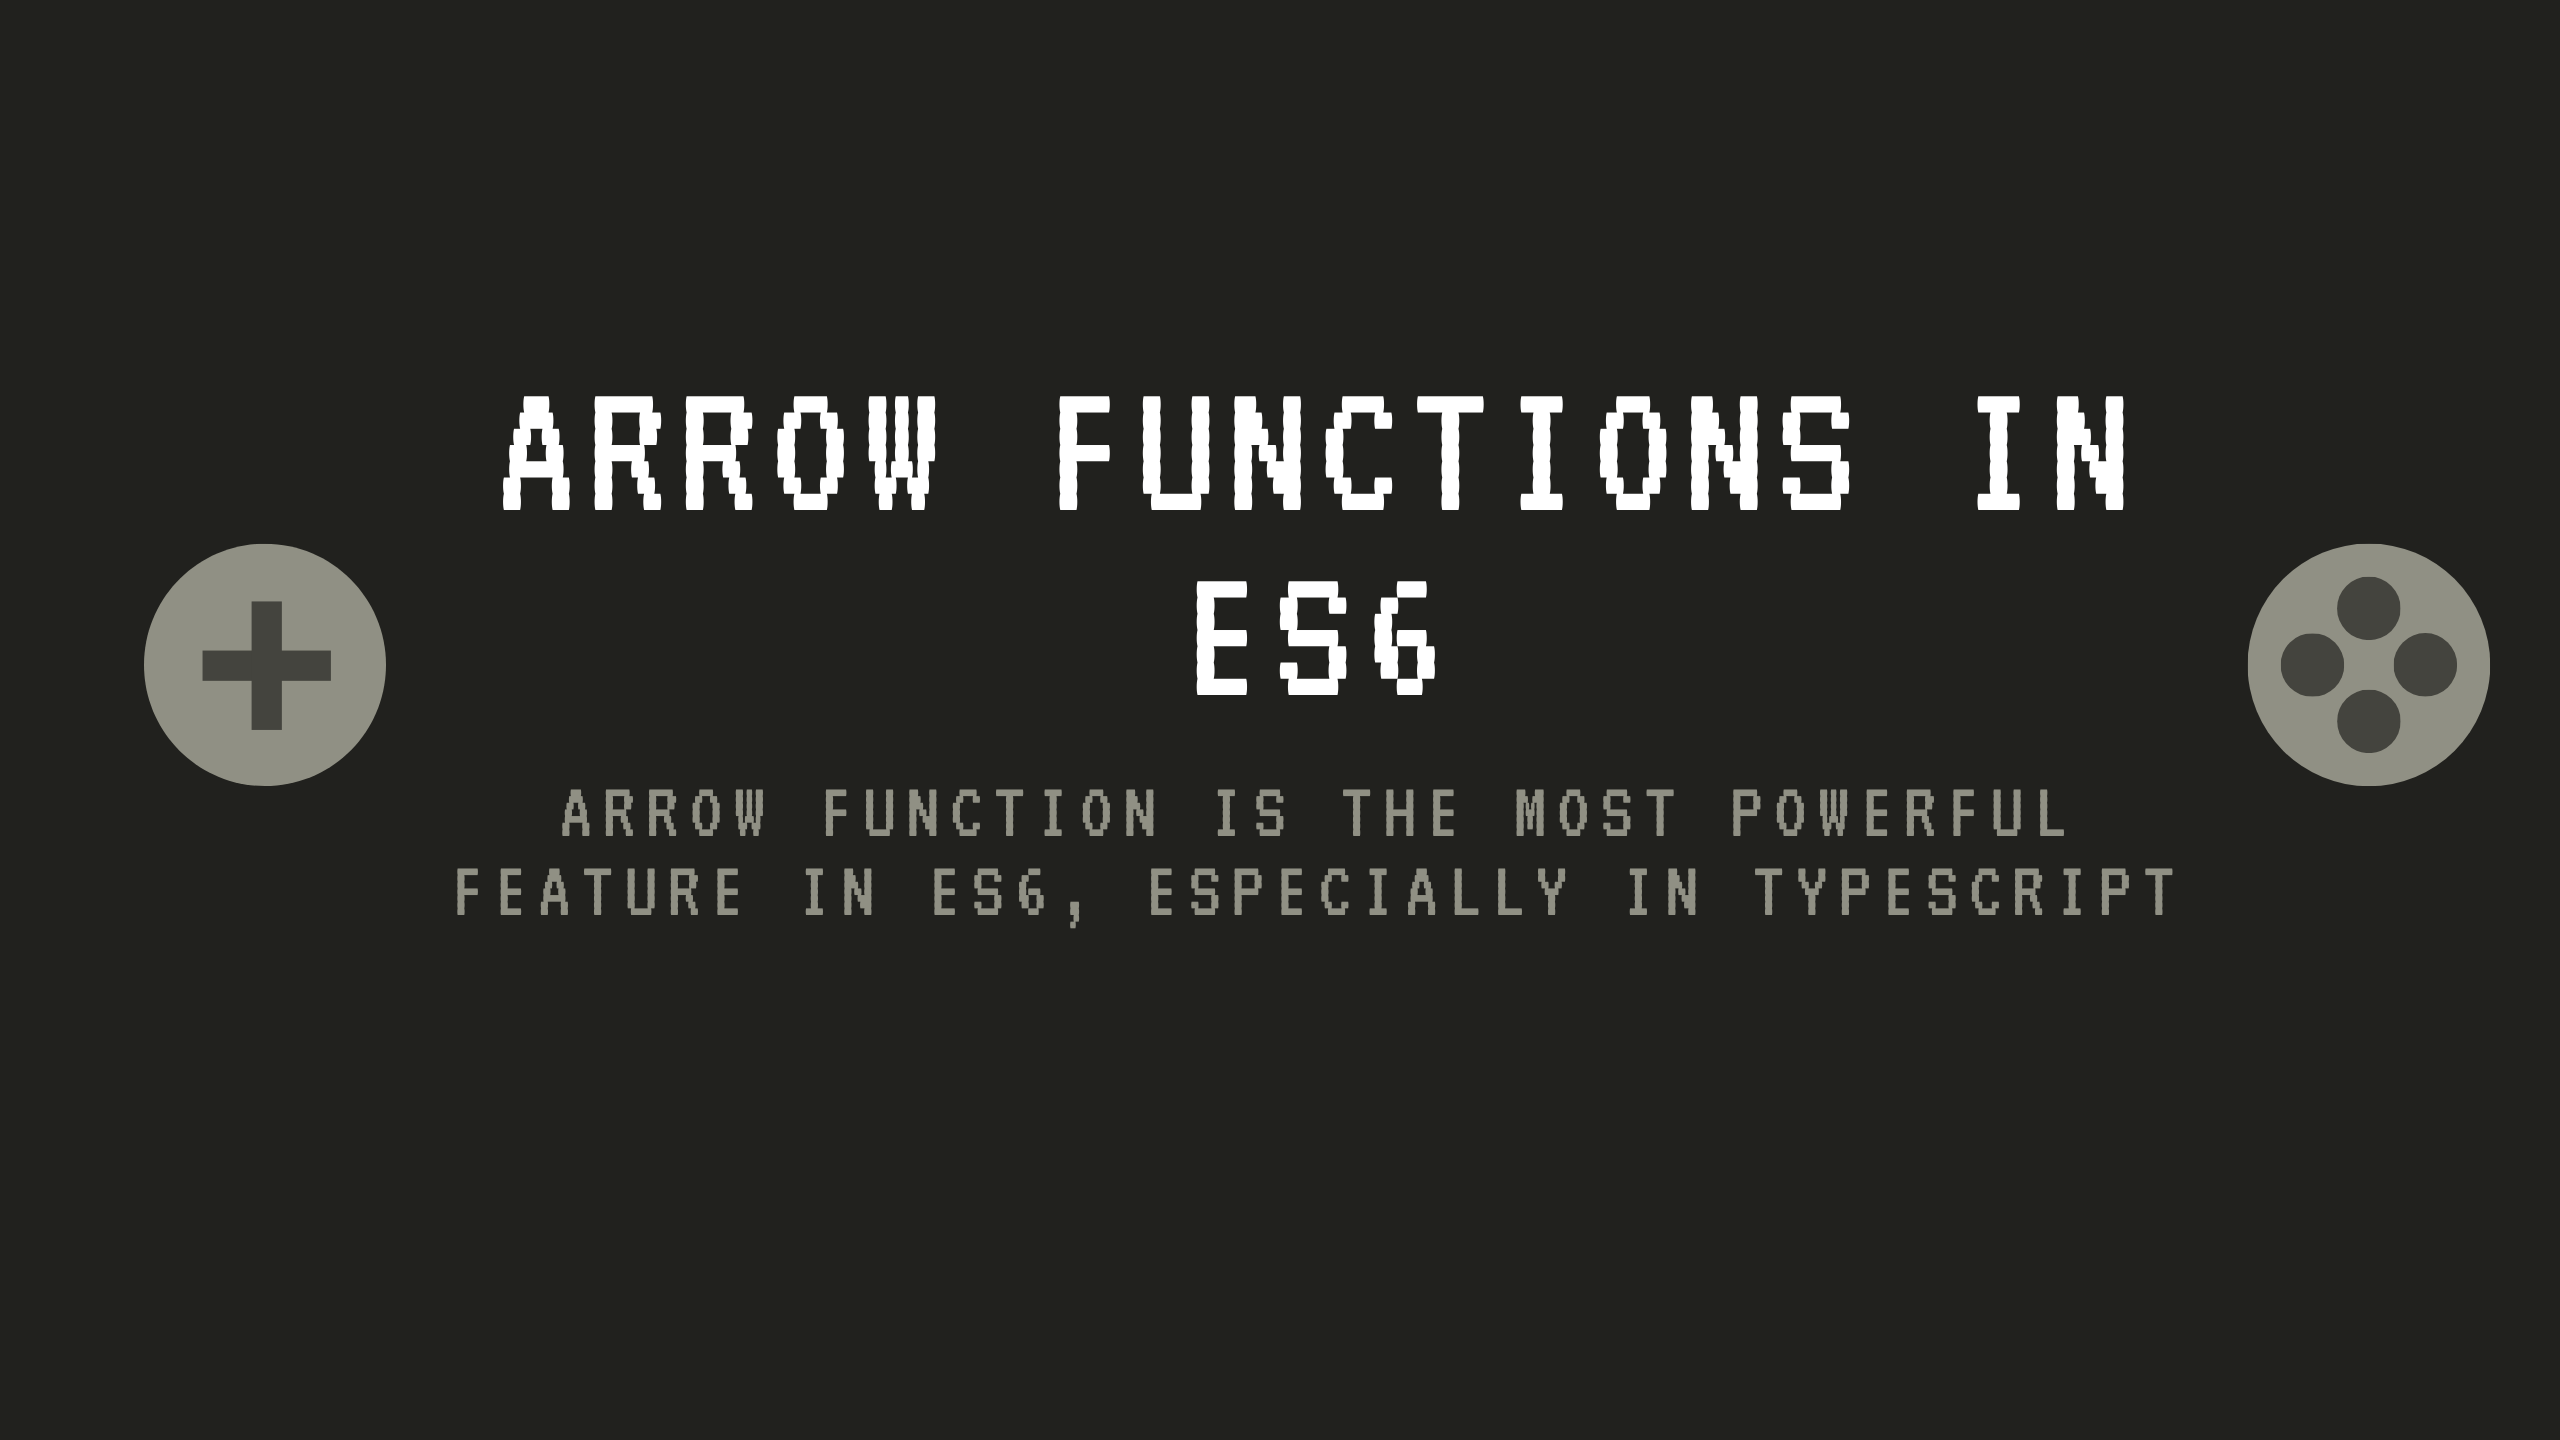 Arrow functions in ES6